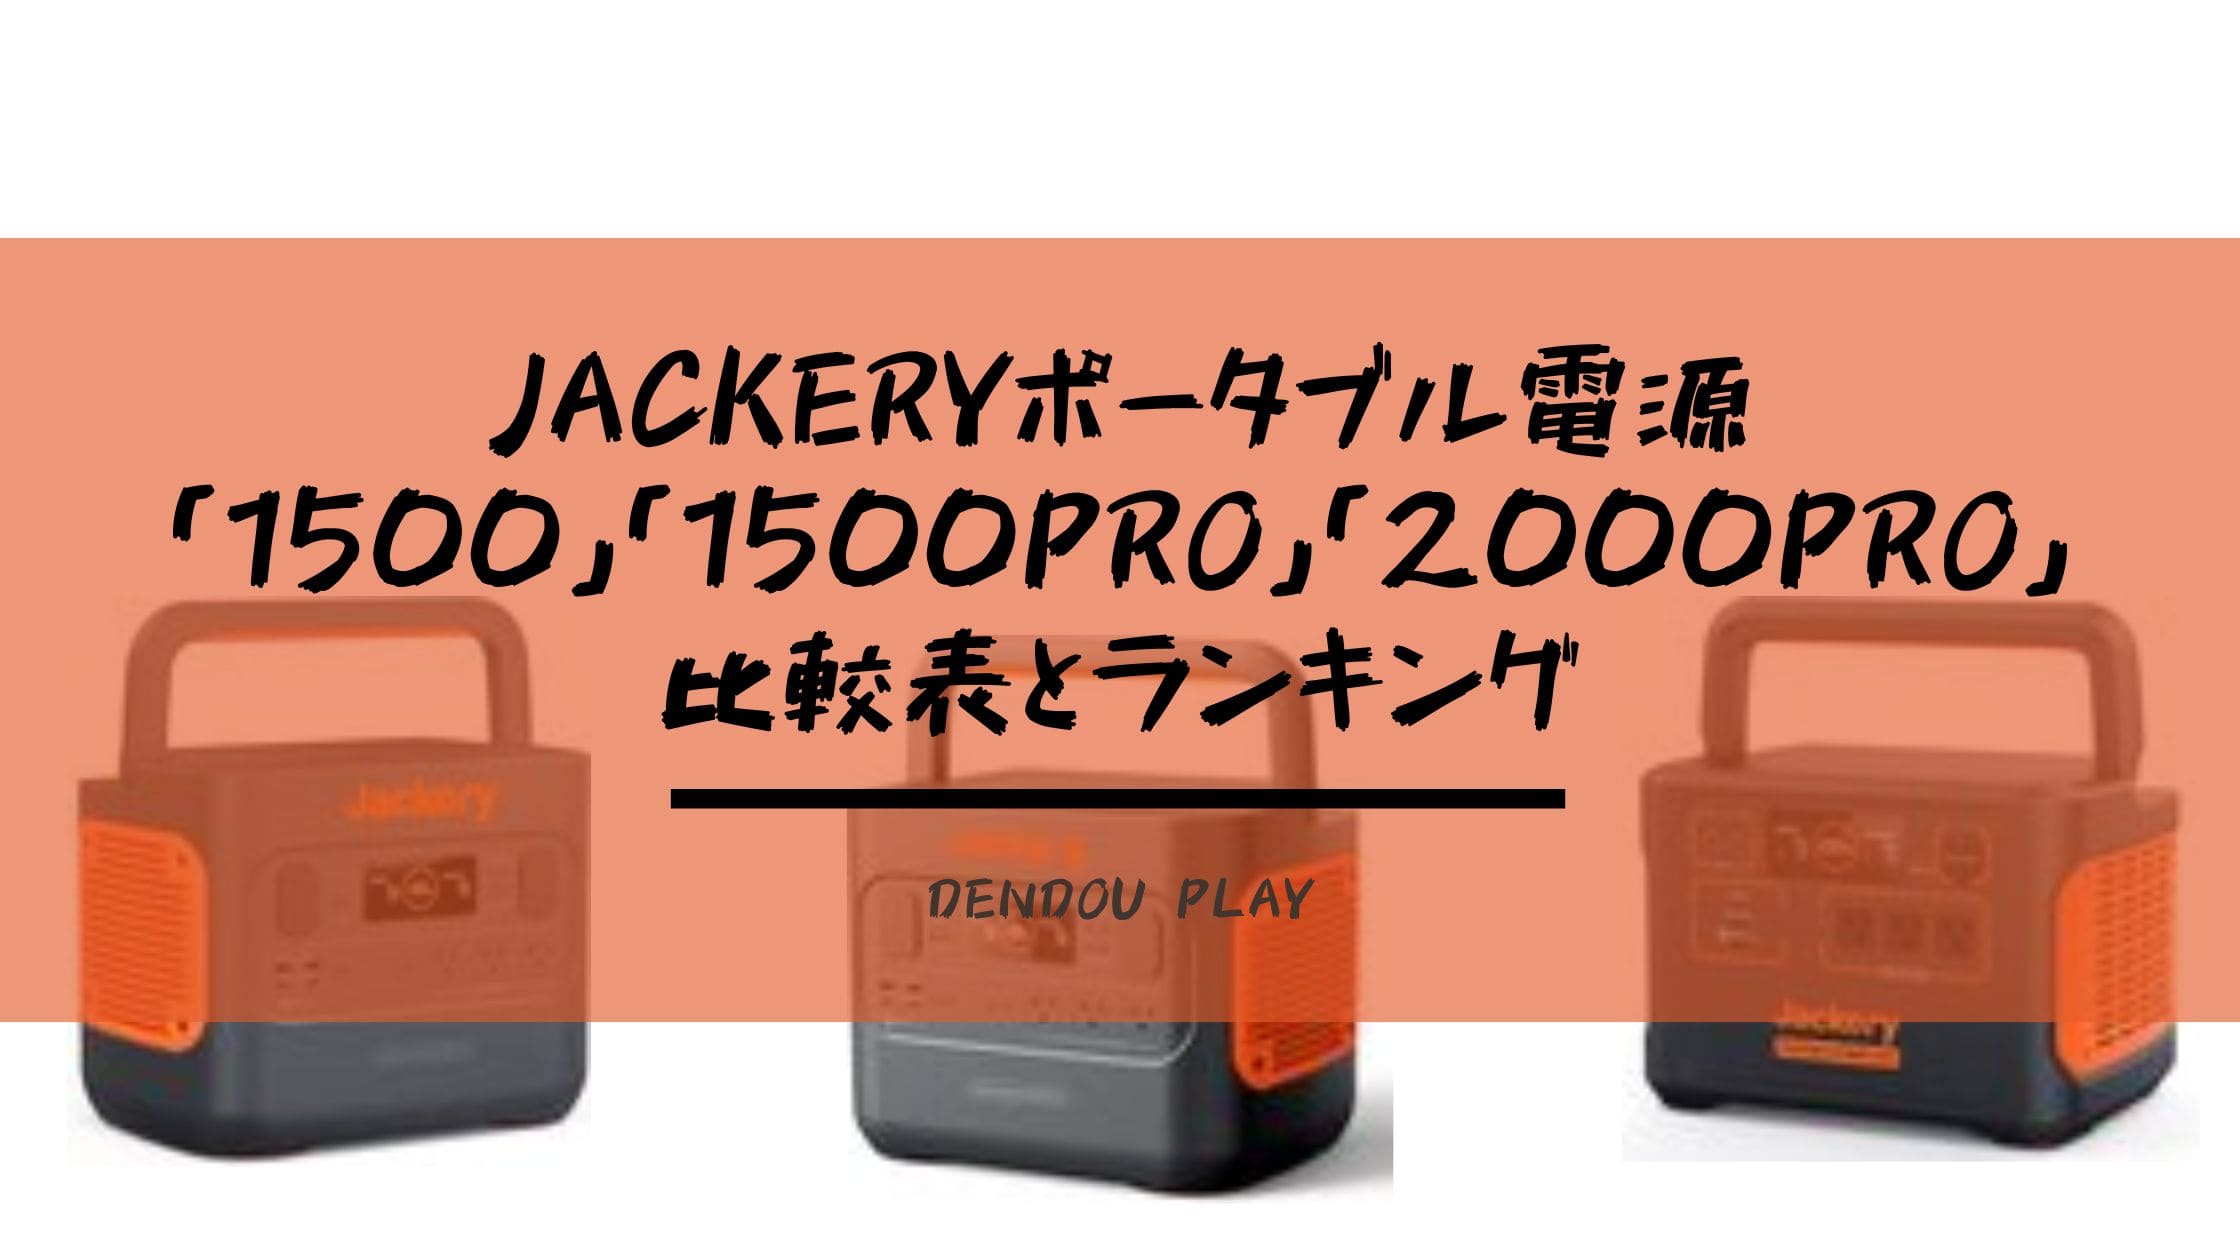 Jackeryポータブル電源1500・1500 Pro・2000 Proの比較表とランキング